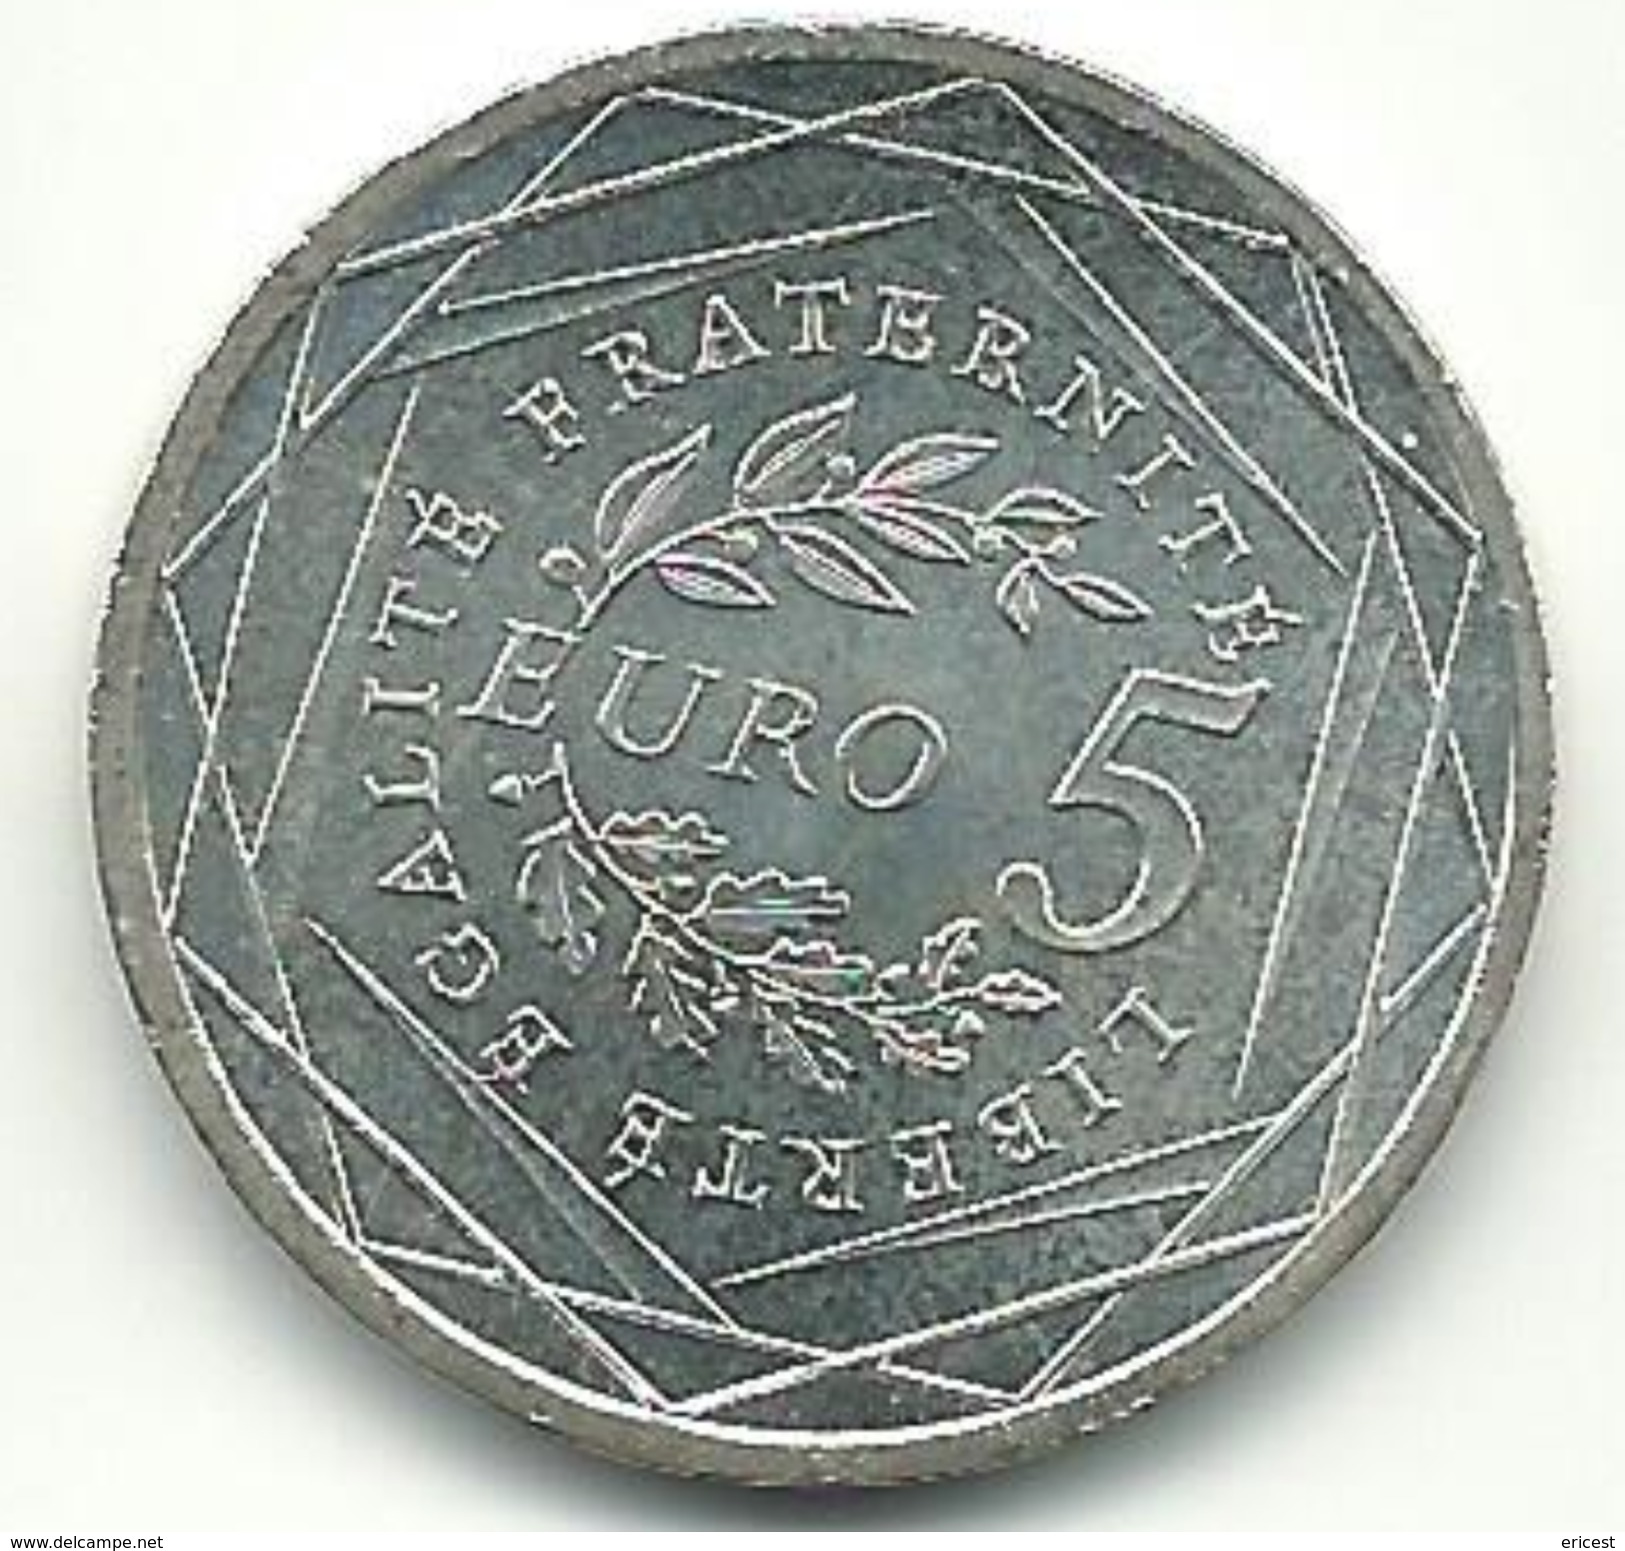 5 EUROS ARGENT 2008 - France